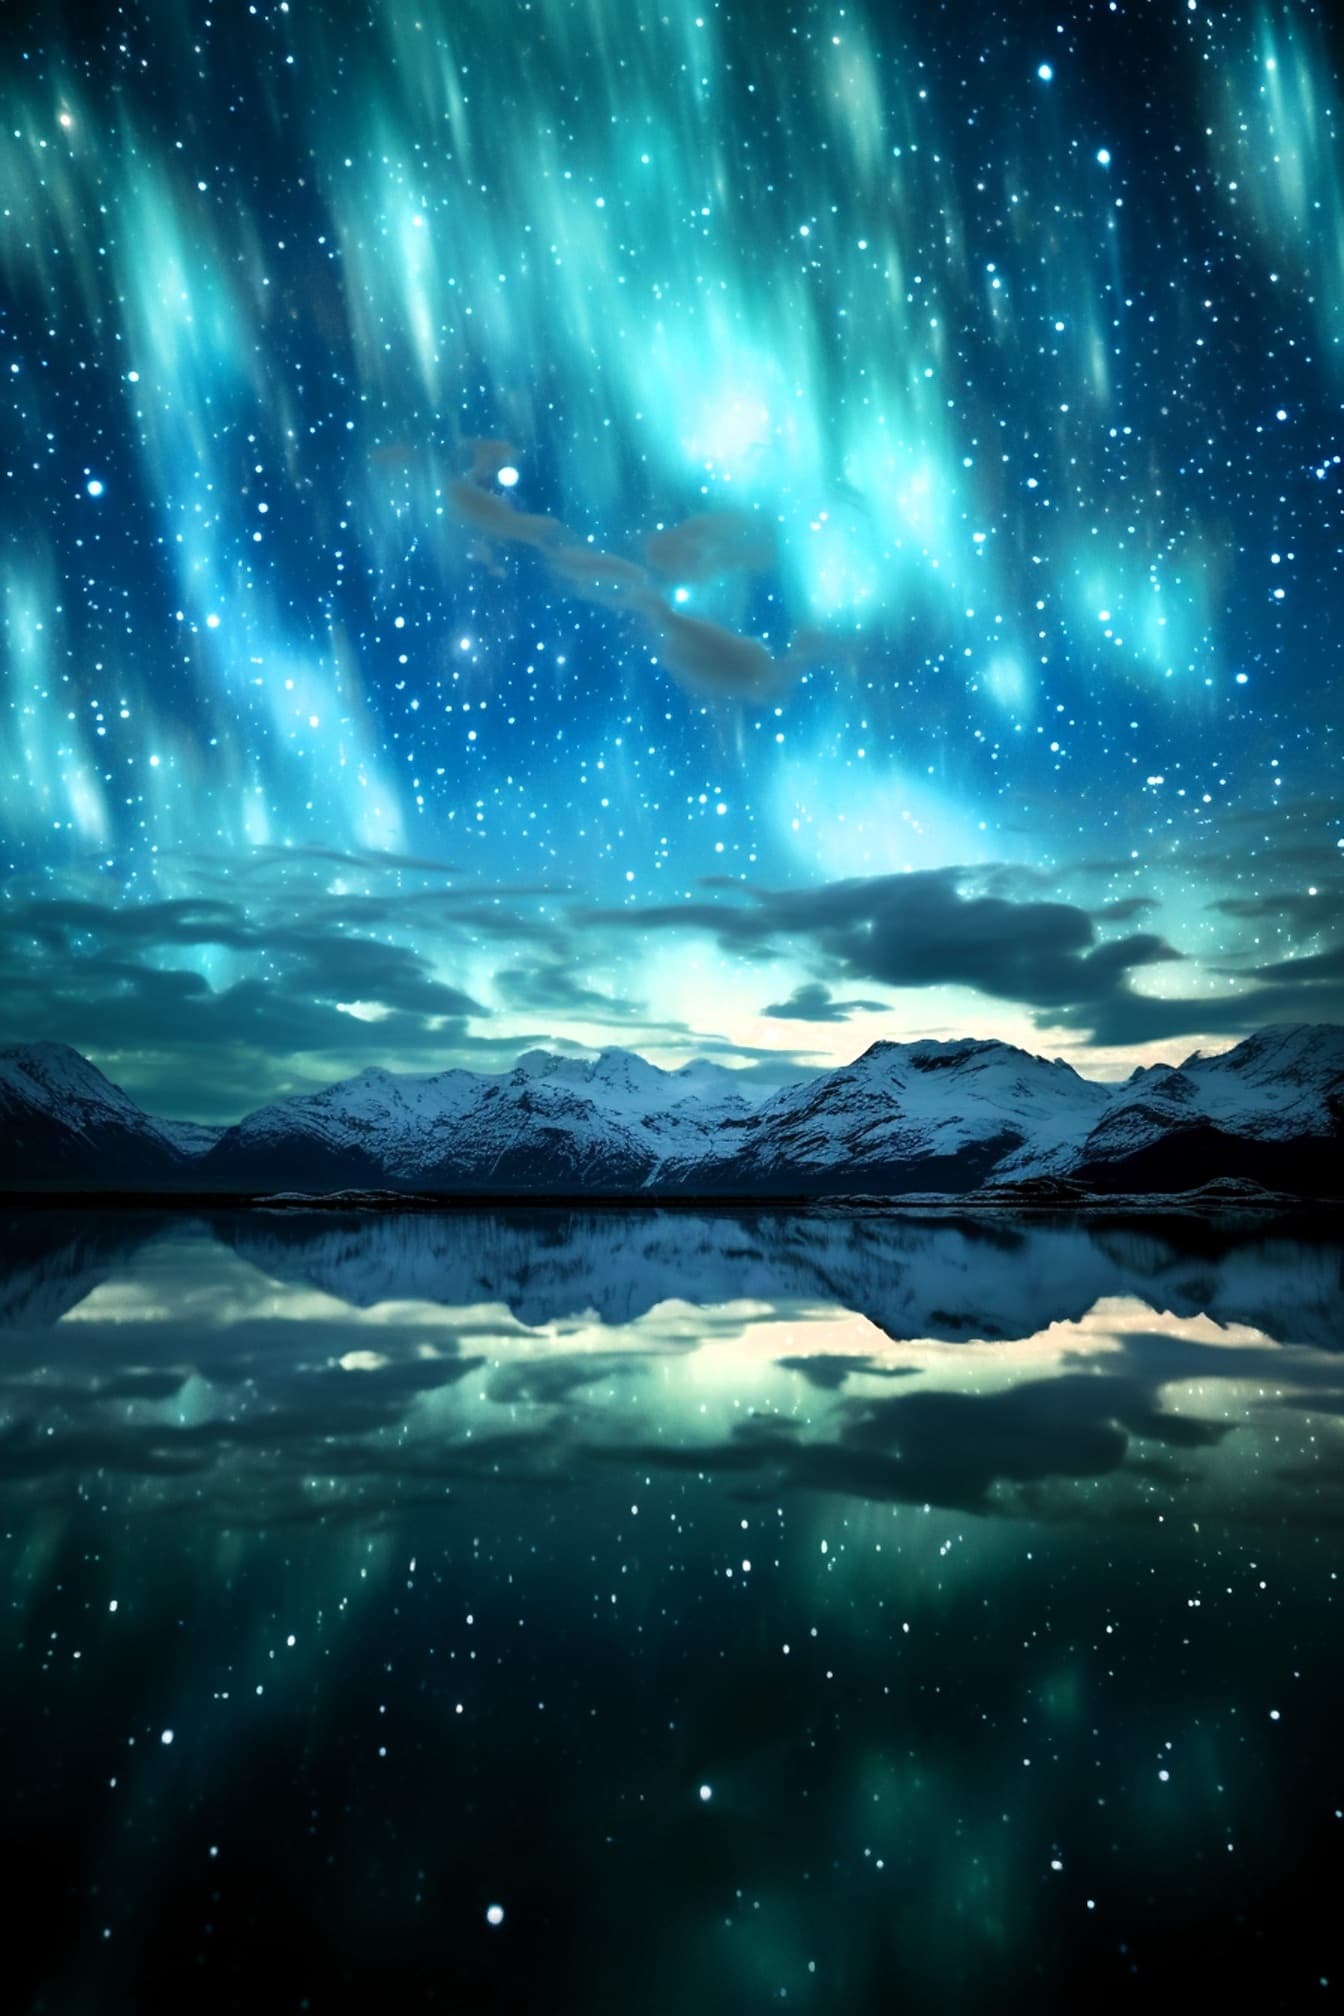 Aurore boréale sur le ciel nocturne arctique avec des étoiles et une illustration au bord du lac Glaceir